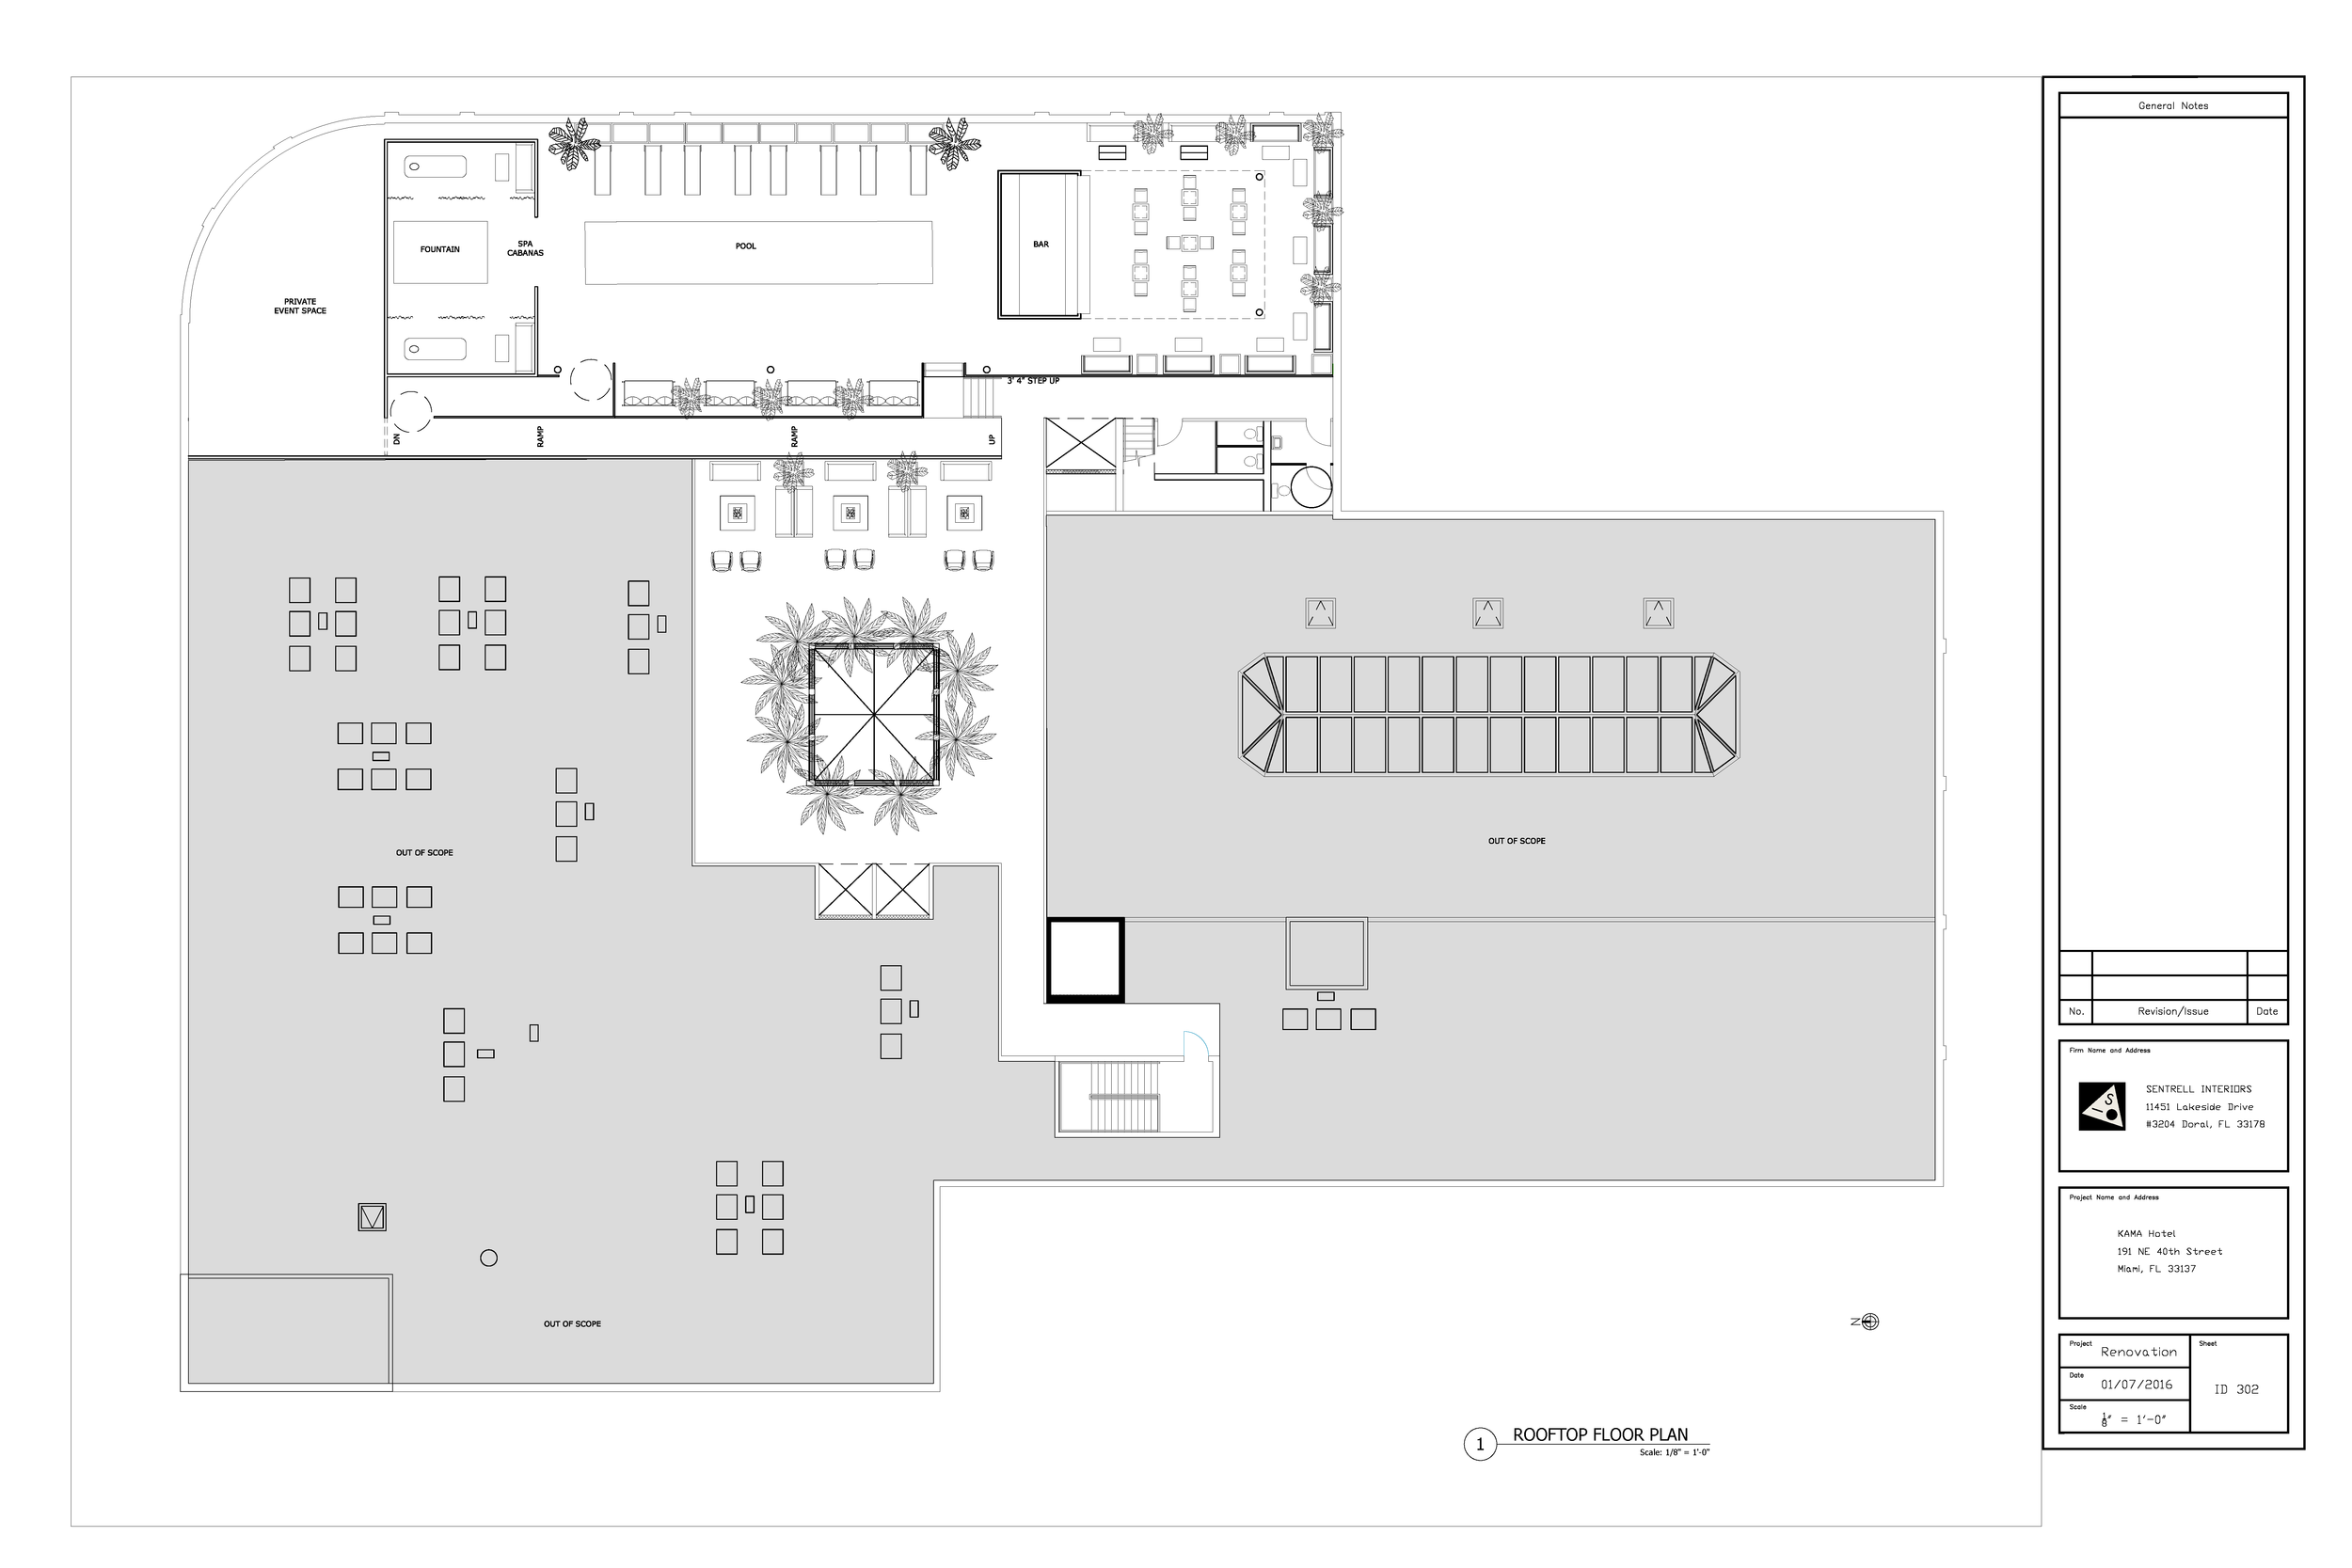 ID 302 Rooftop Floor Plan.png